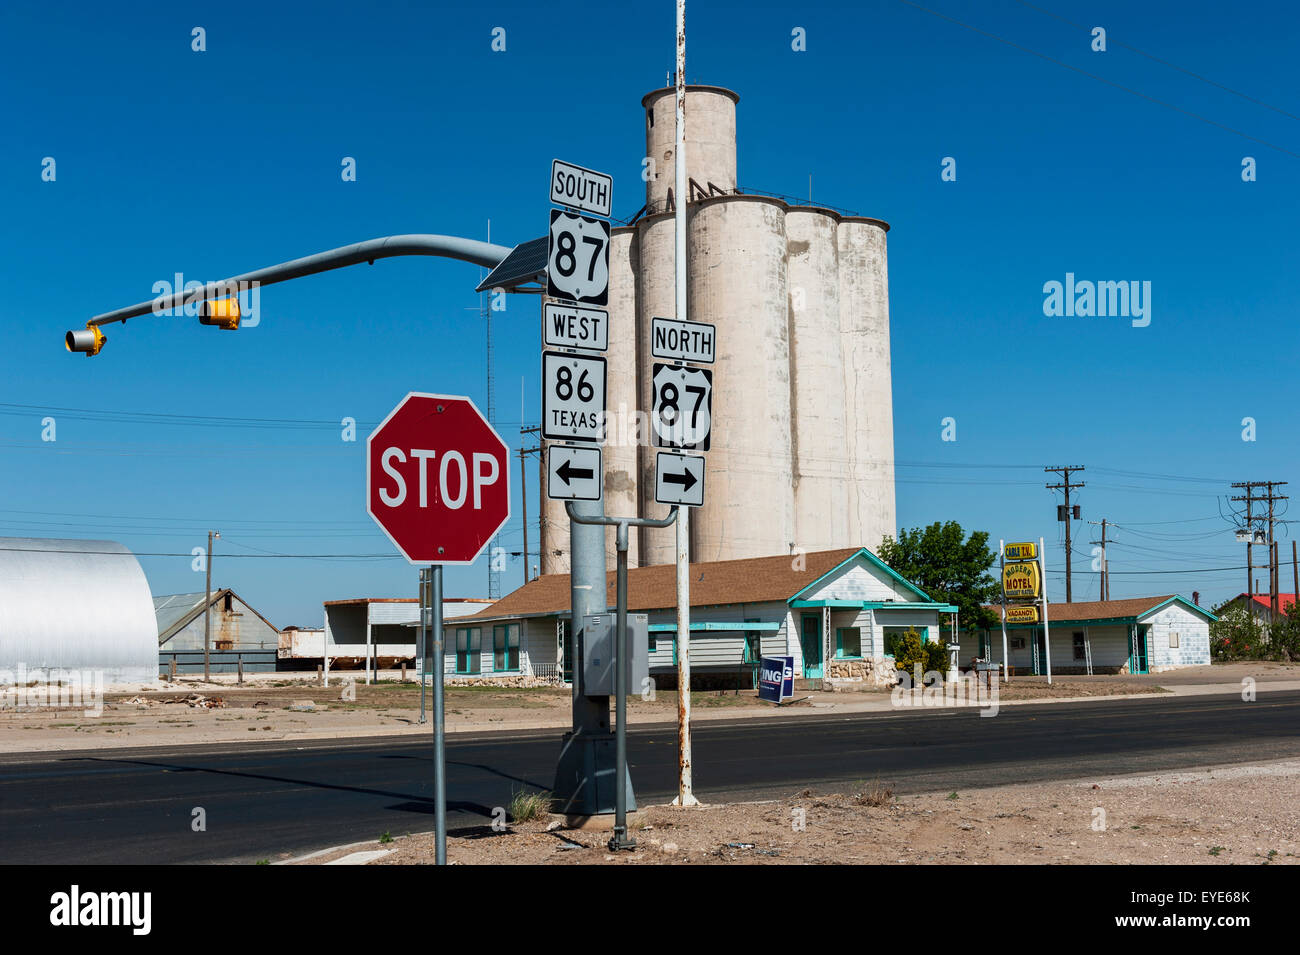 Getreidesilo und alten Motel an der Kreuzung der Route 87 und Texas State Highway 86, Tulia, Texas Panhandle, Usa Stockfoto